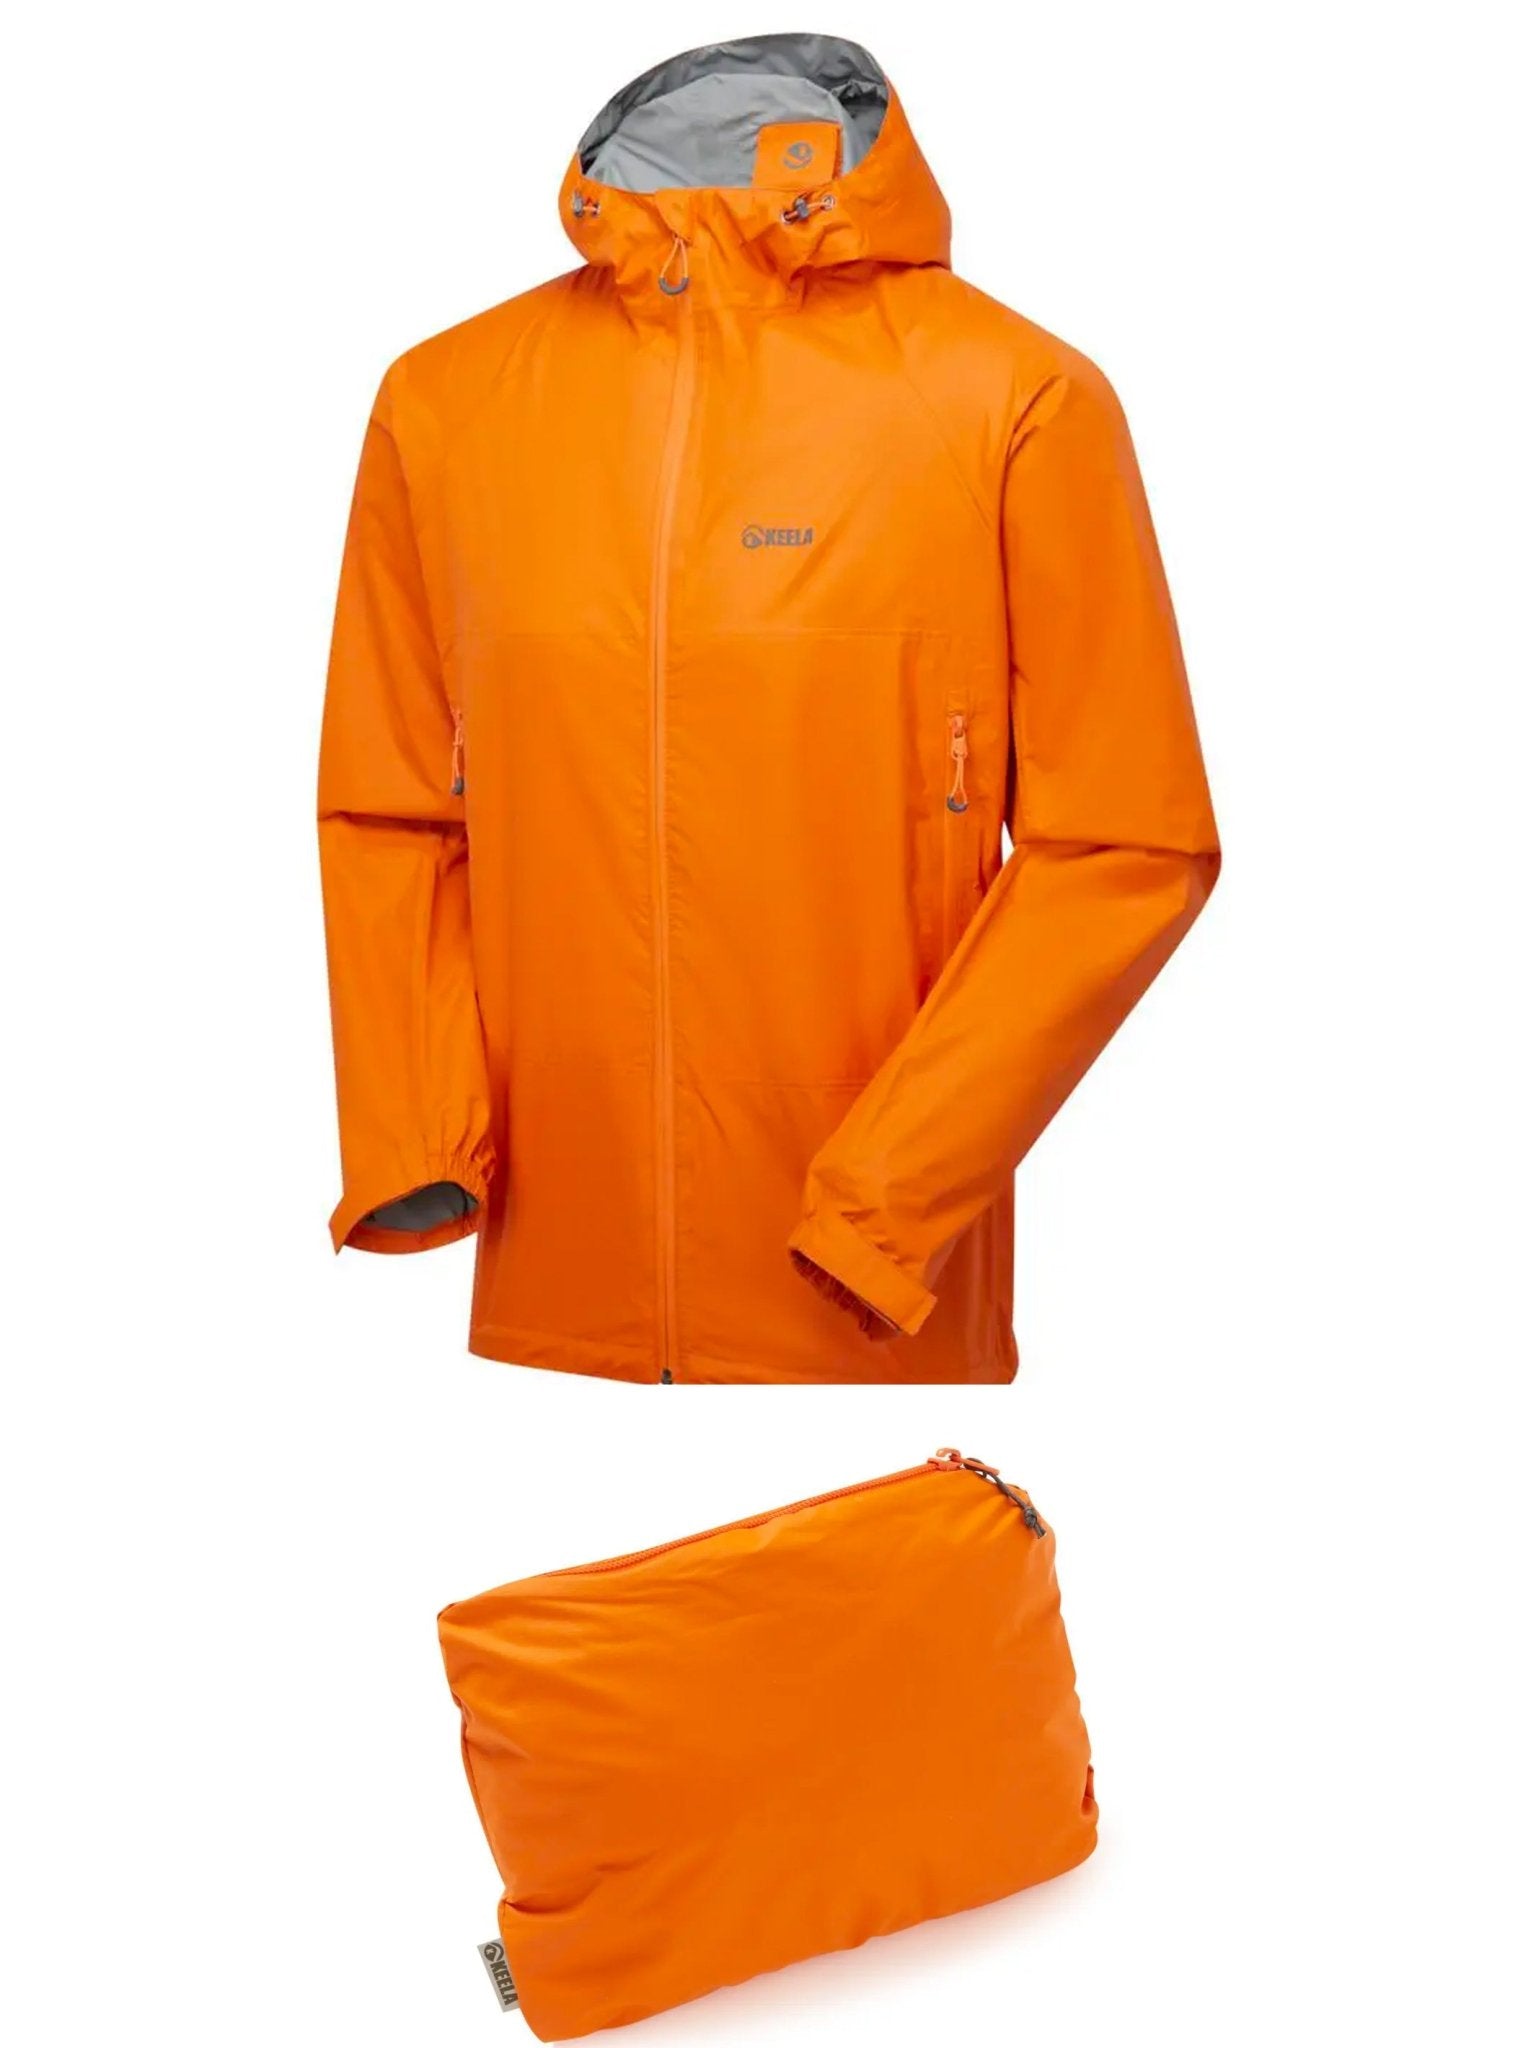 4elementsclothingKeelaKeela Outdoors - Keela Mens Paklite Waterproof packable, Breathable lightweight Jacket / coat with hoodOuterwear02420-262000-0-111